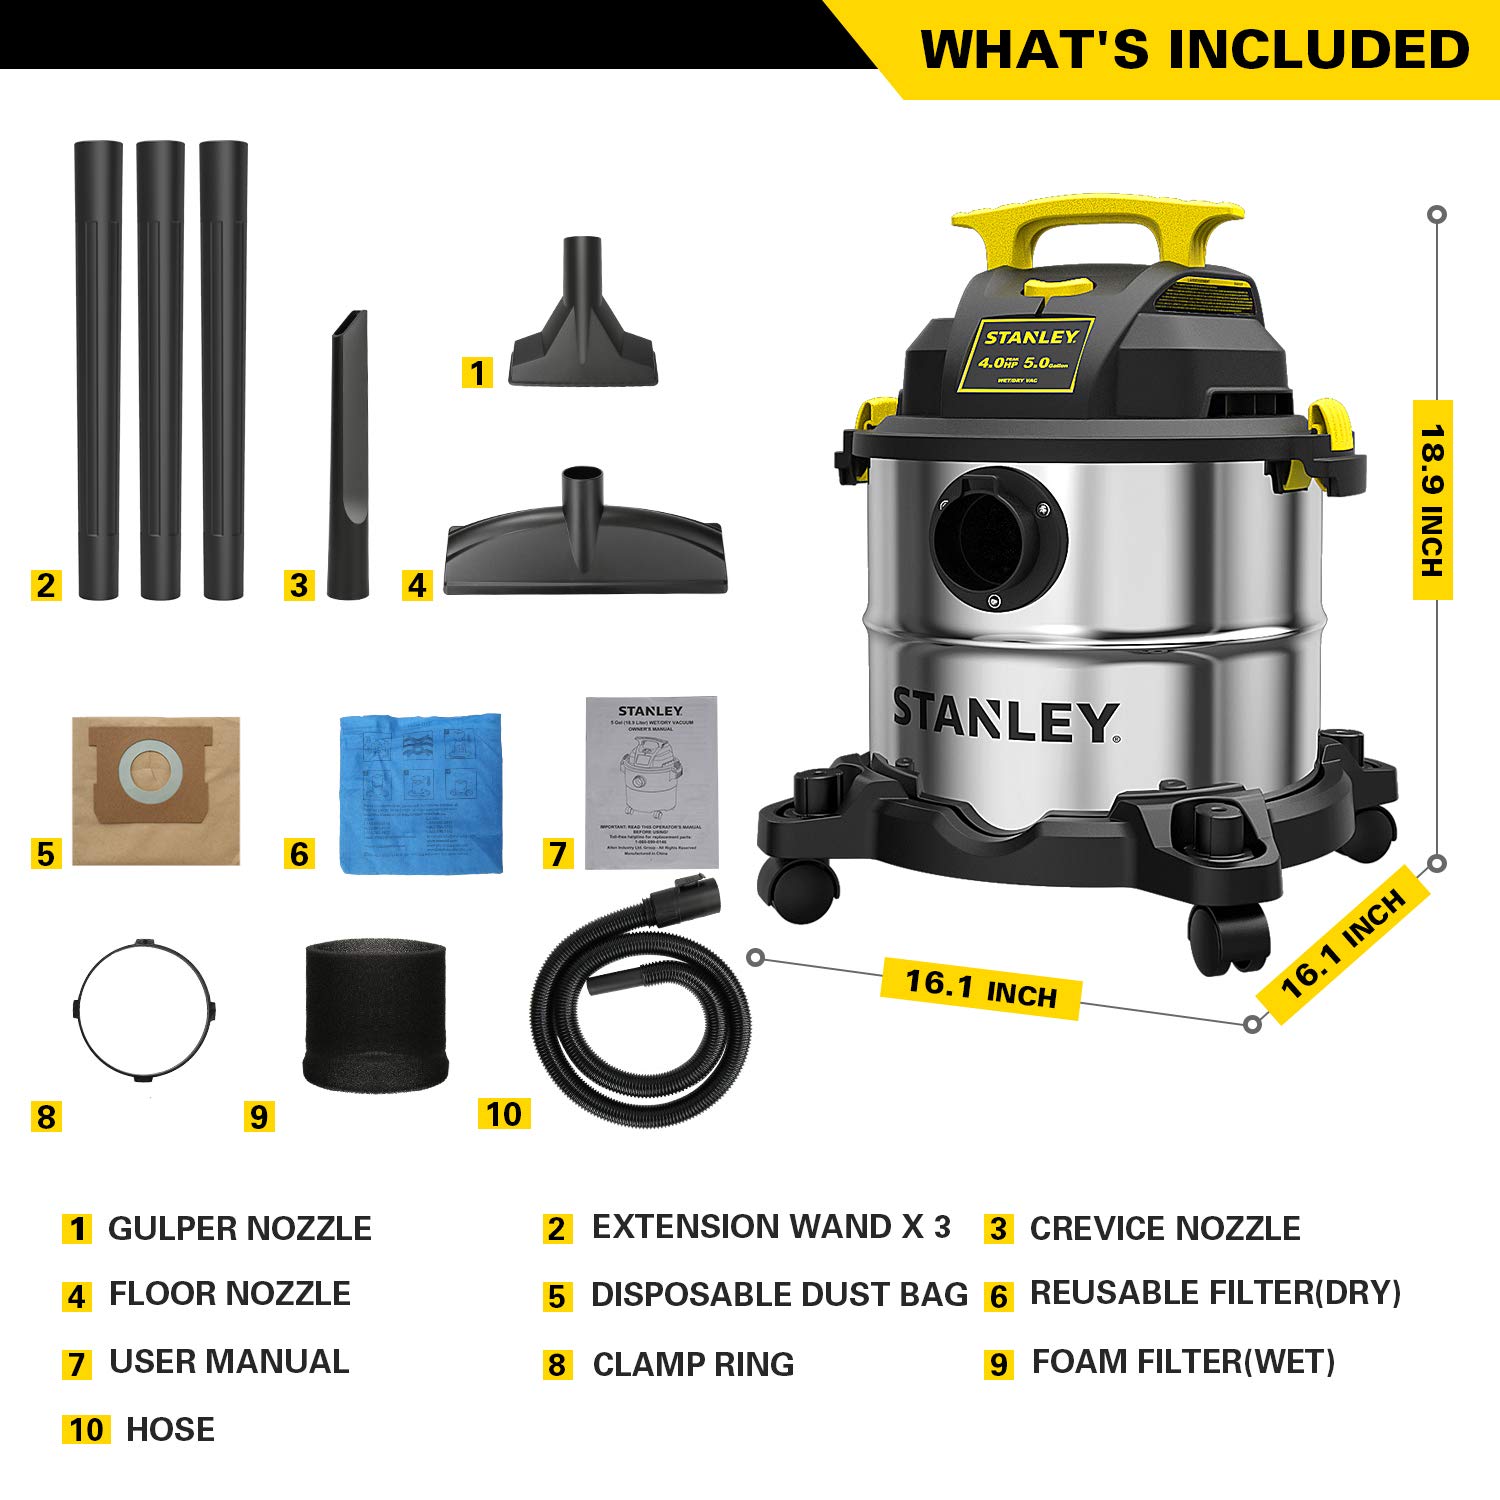 Stanley SL18115 Wet/Dry Vacuum, 4 Horsepower, Stainless Steel Tank, 5 Gallon, 4.0 HP, 50